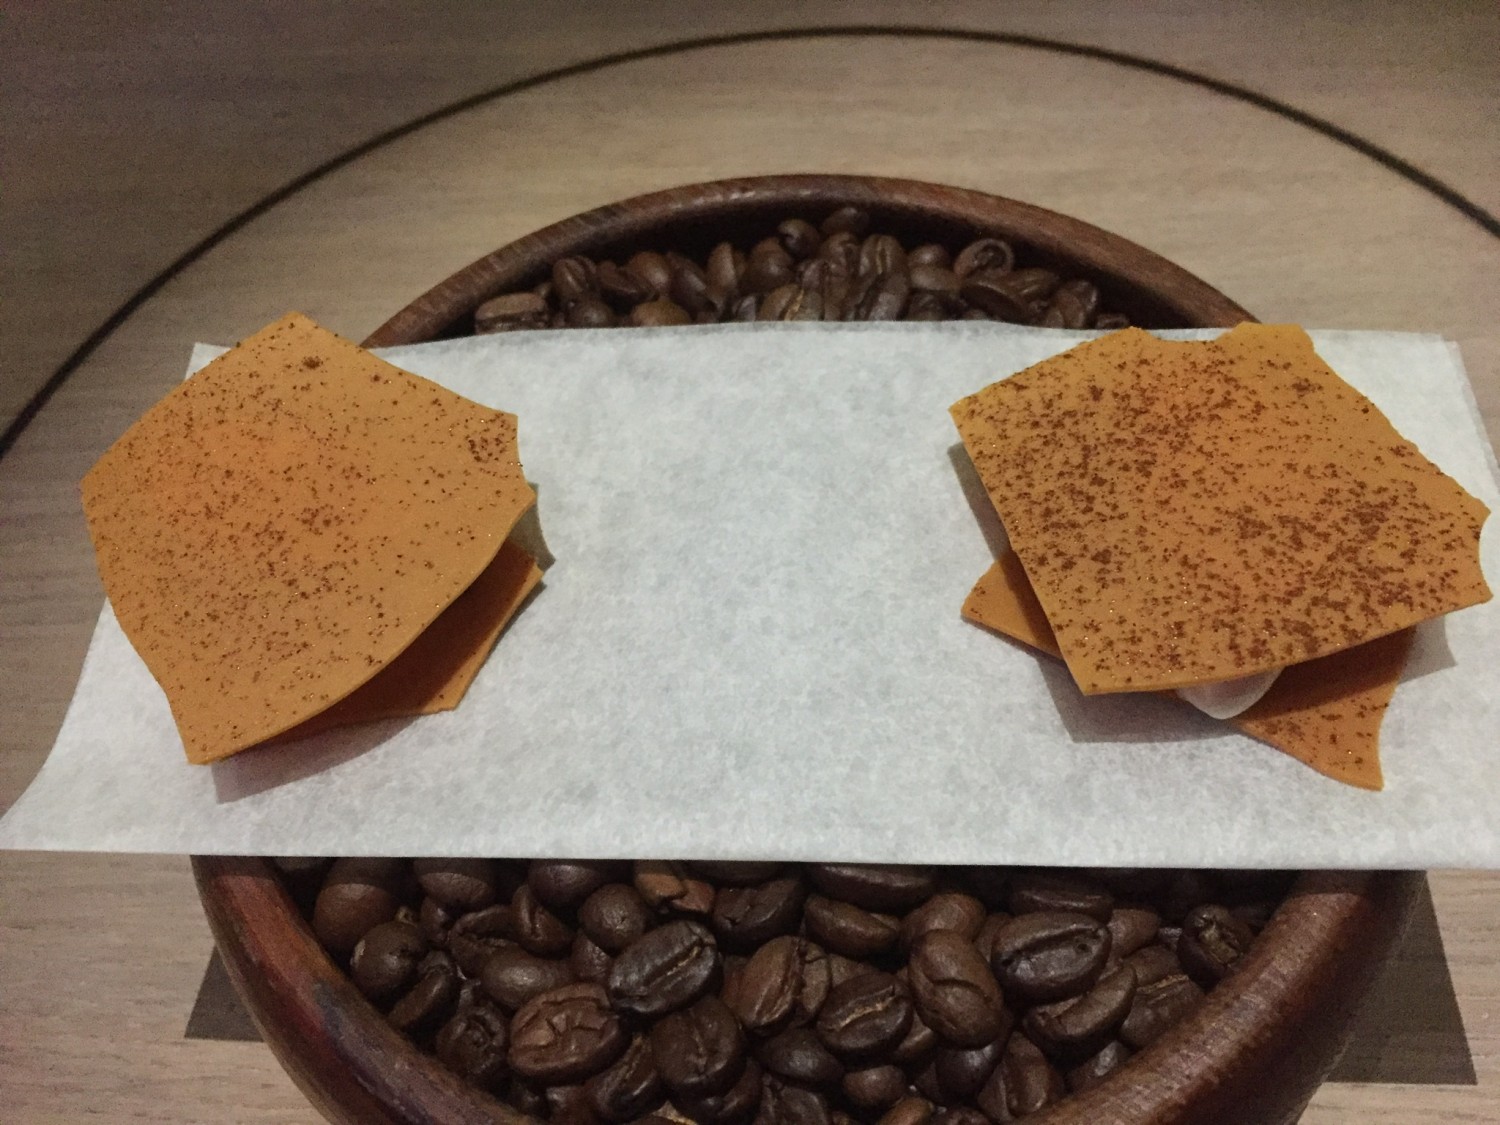 Karamel i 3 versioner drysset med kaffe